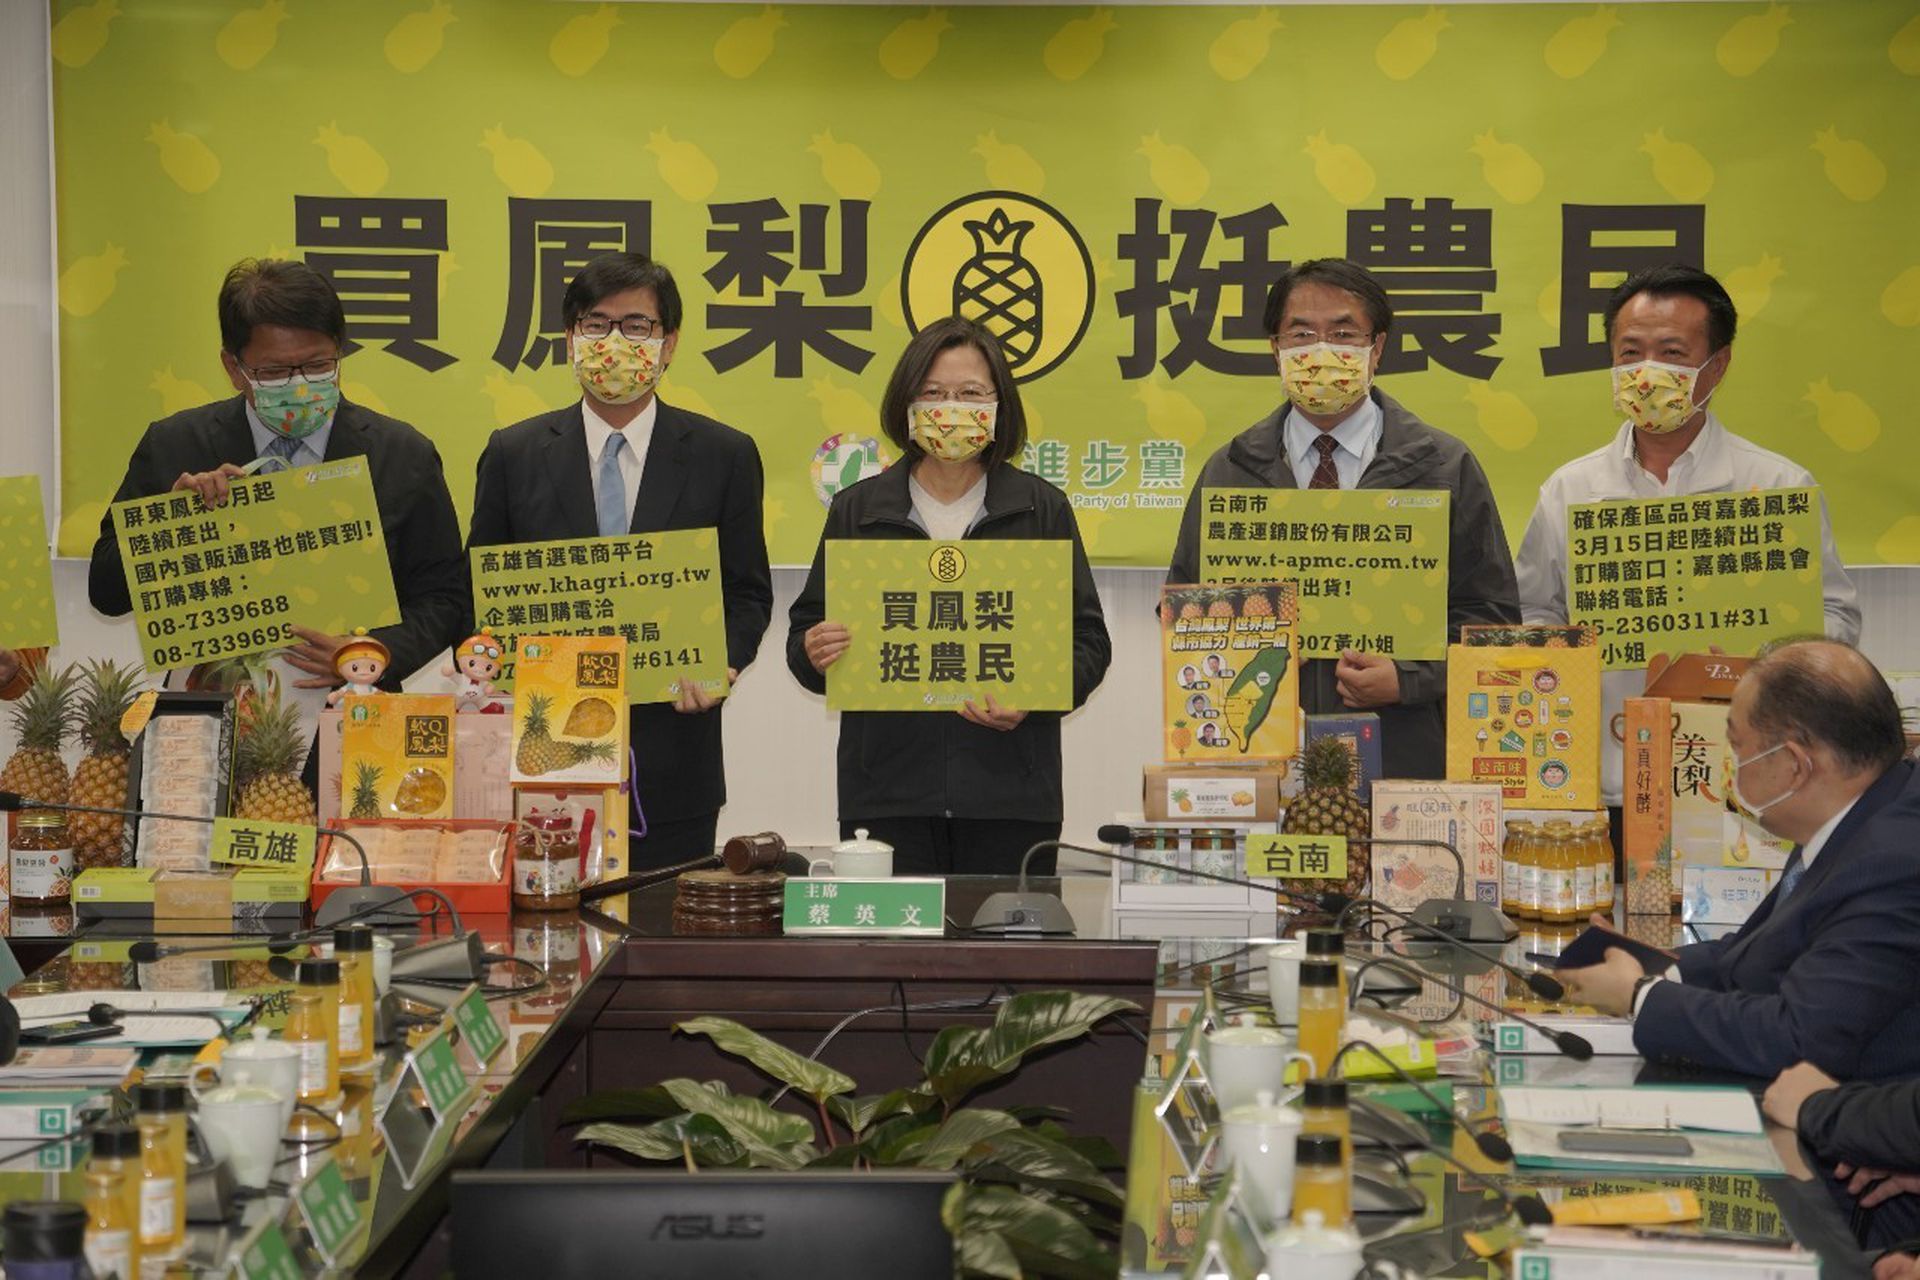 一句 差的菠萝卖大陆 道尽两岸现实 多维新闻 台湾